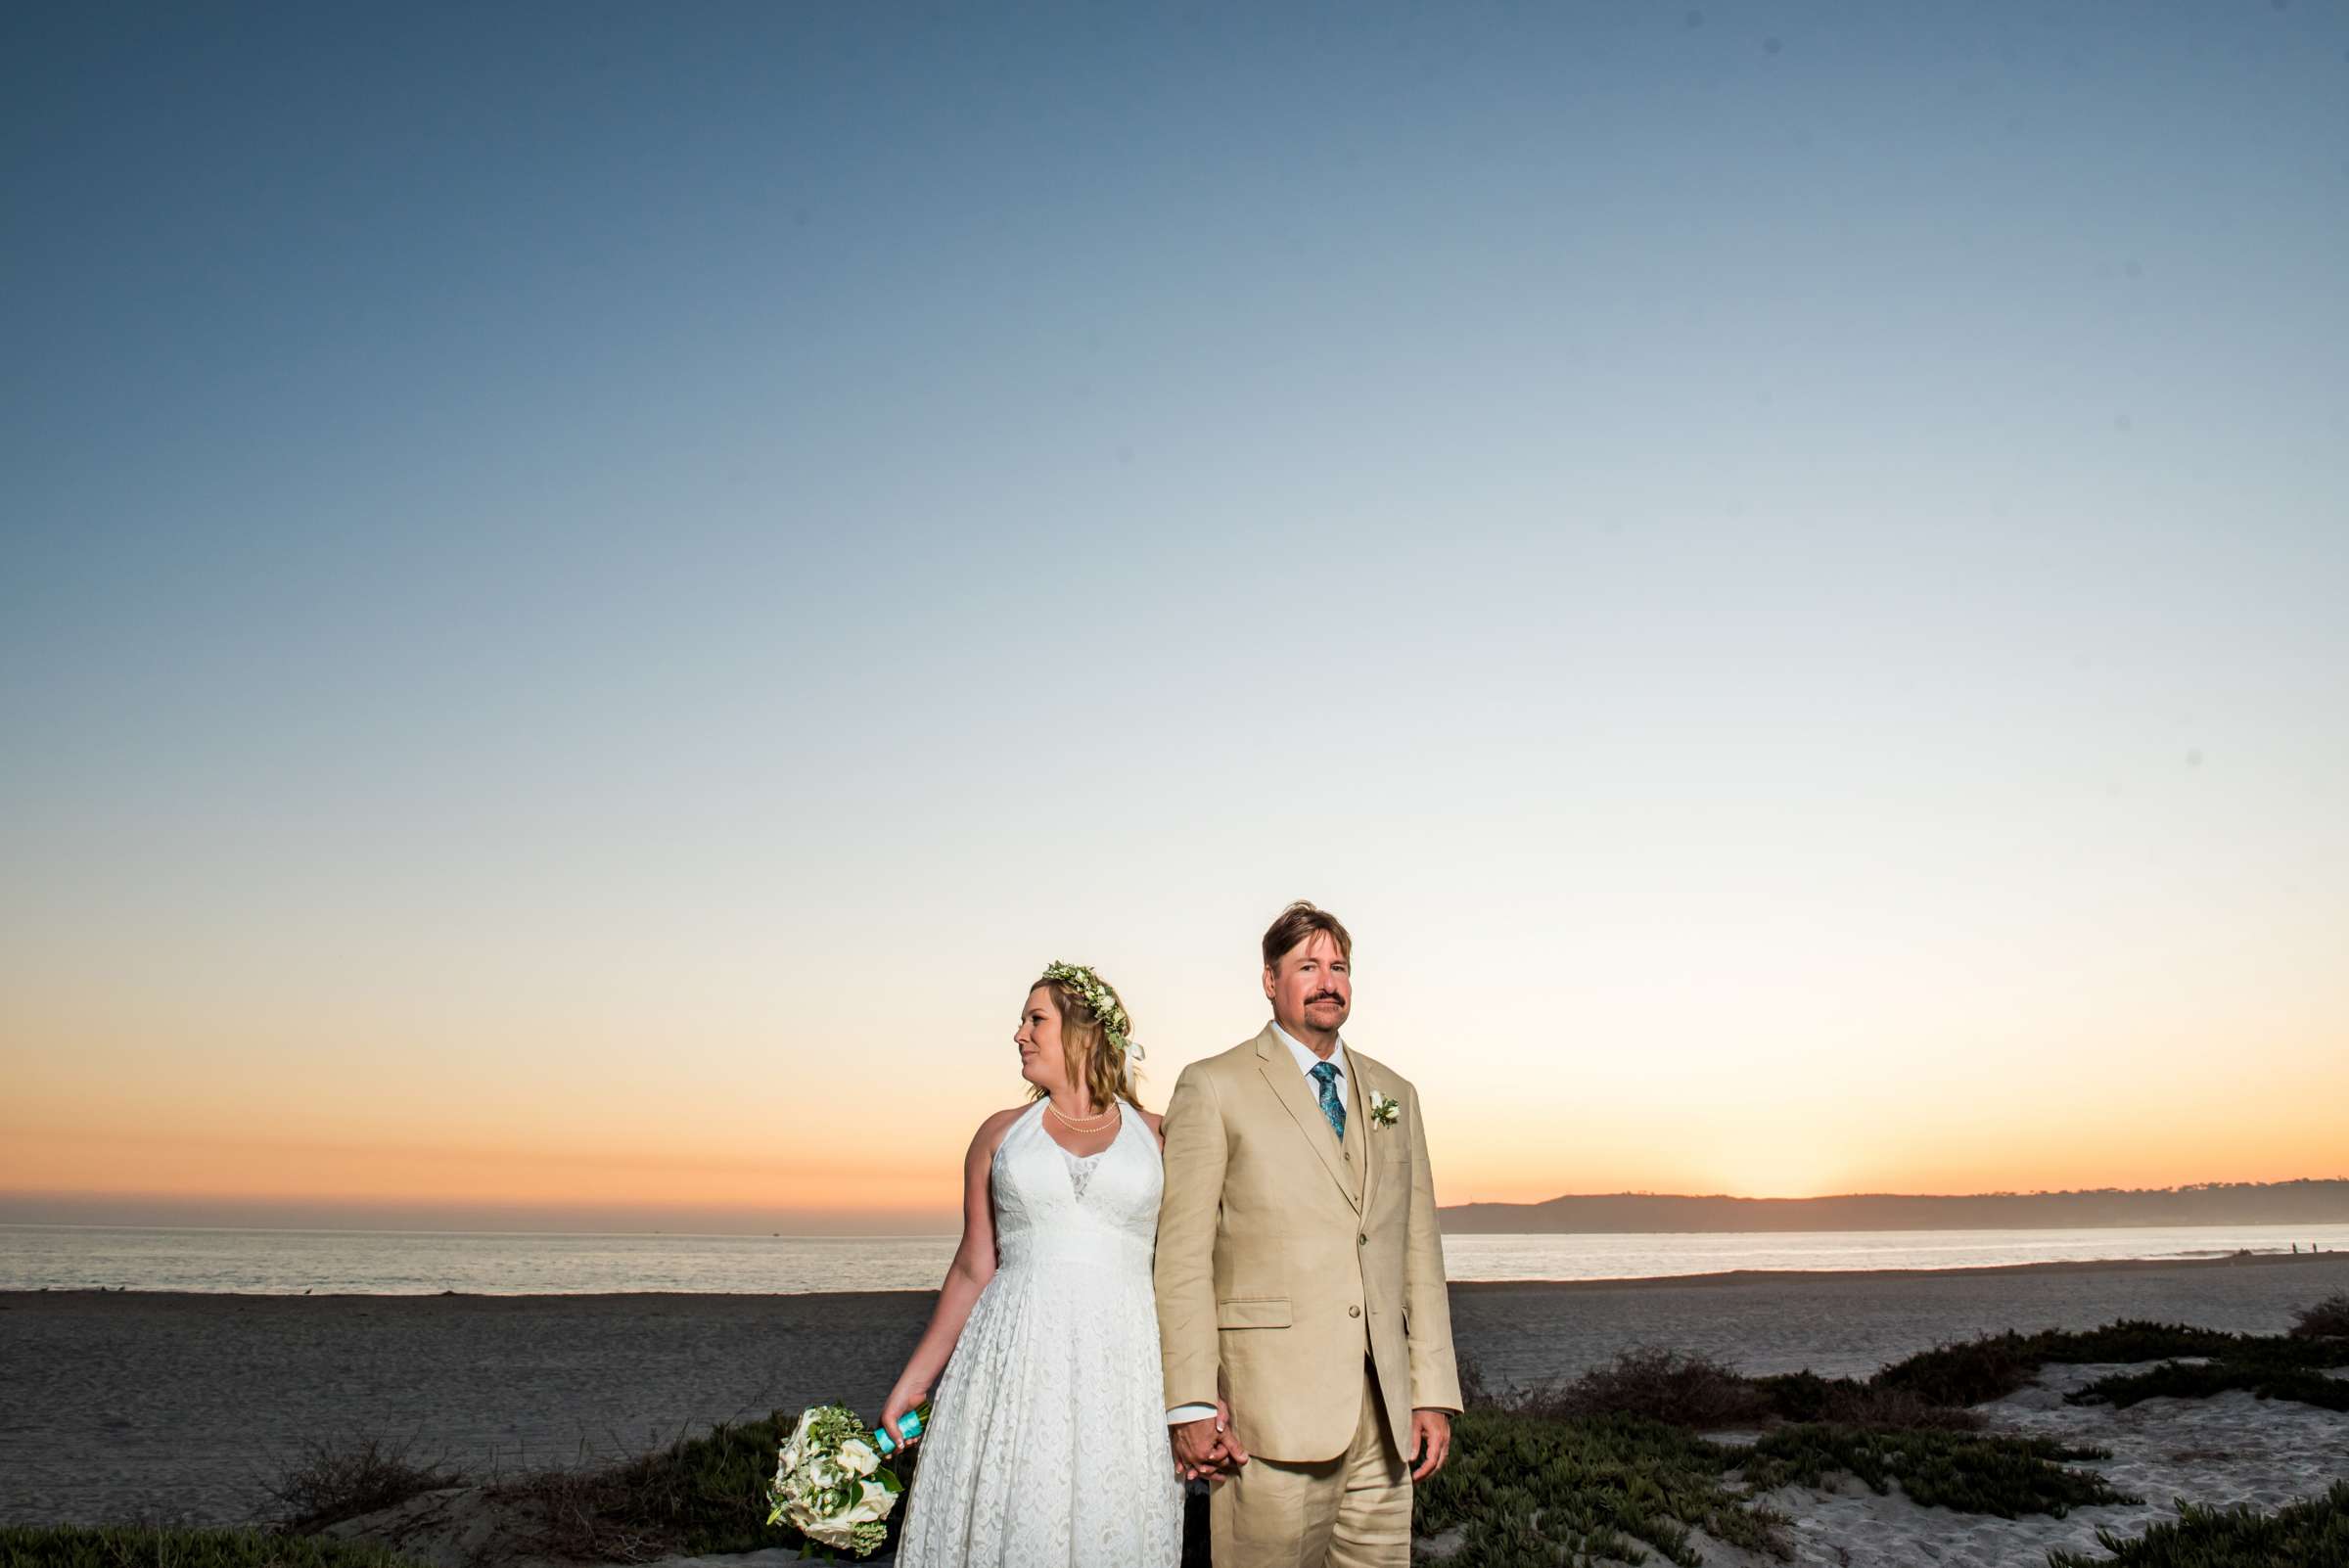 Hotel Del Coronado Wedding, Danielle and Glenn Wedding Photo #19 by True Photography